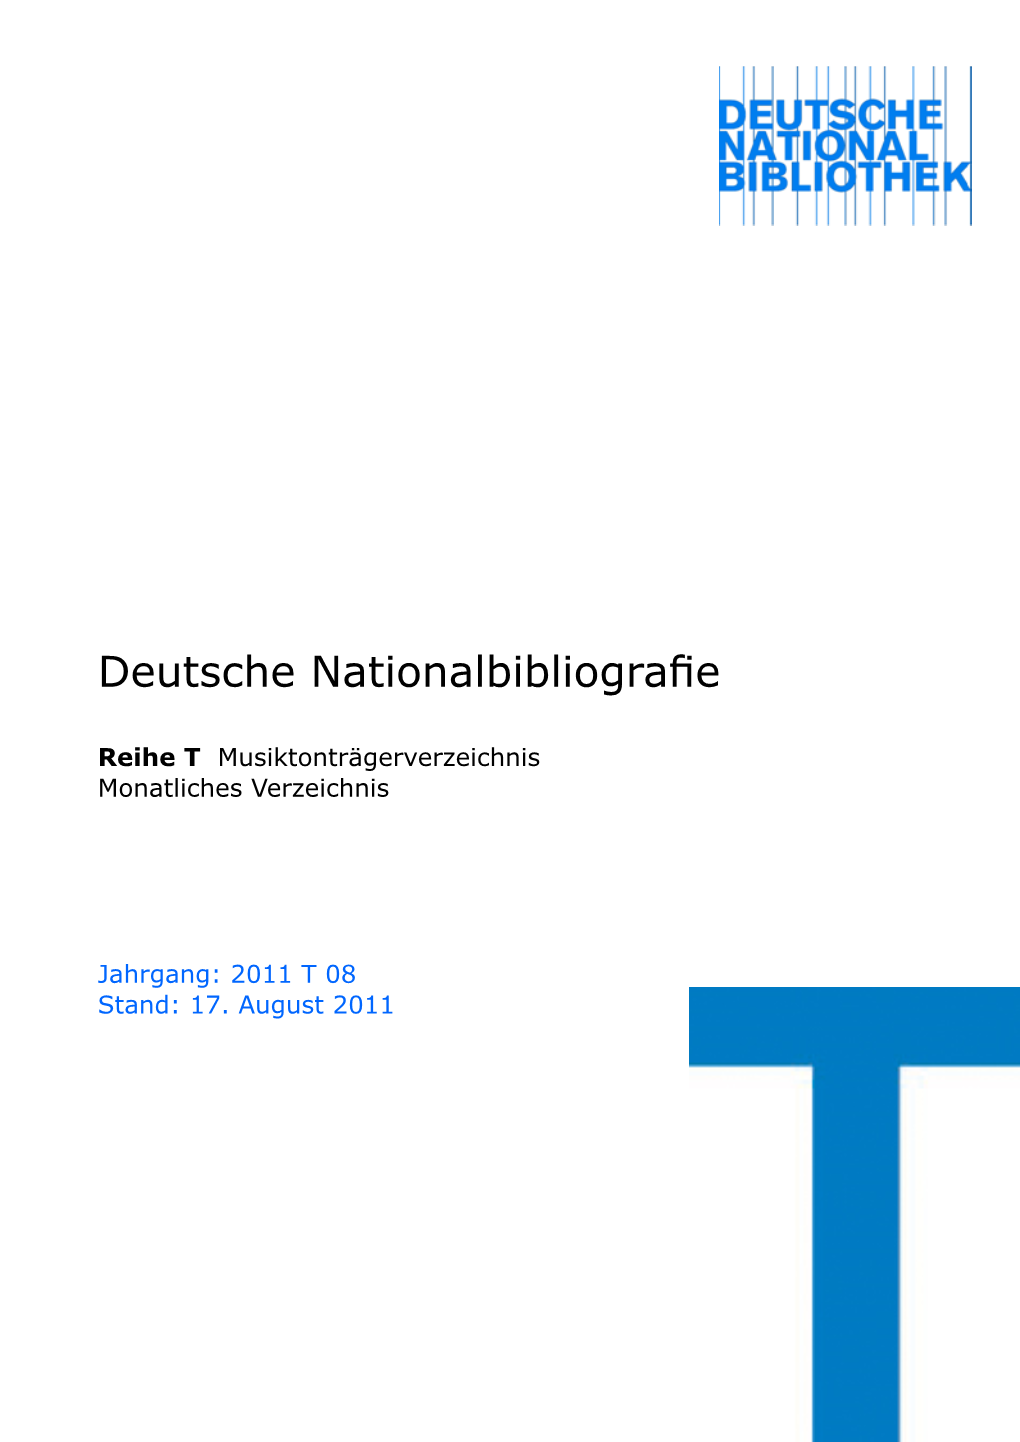 Deutsche Nationalbibliografie 2011 T 08